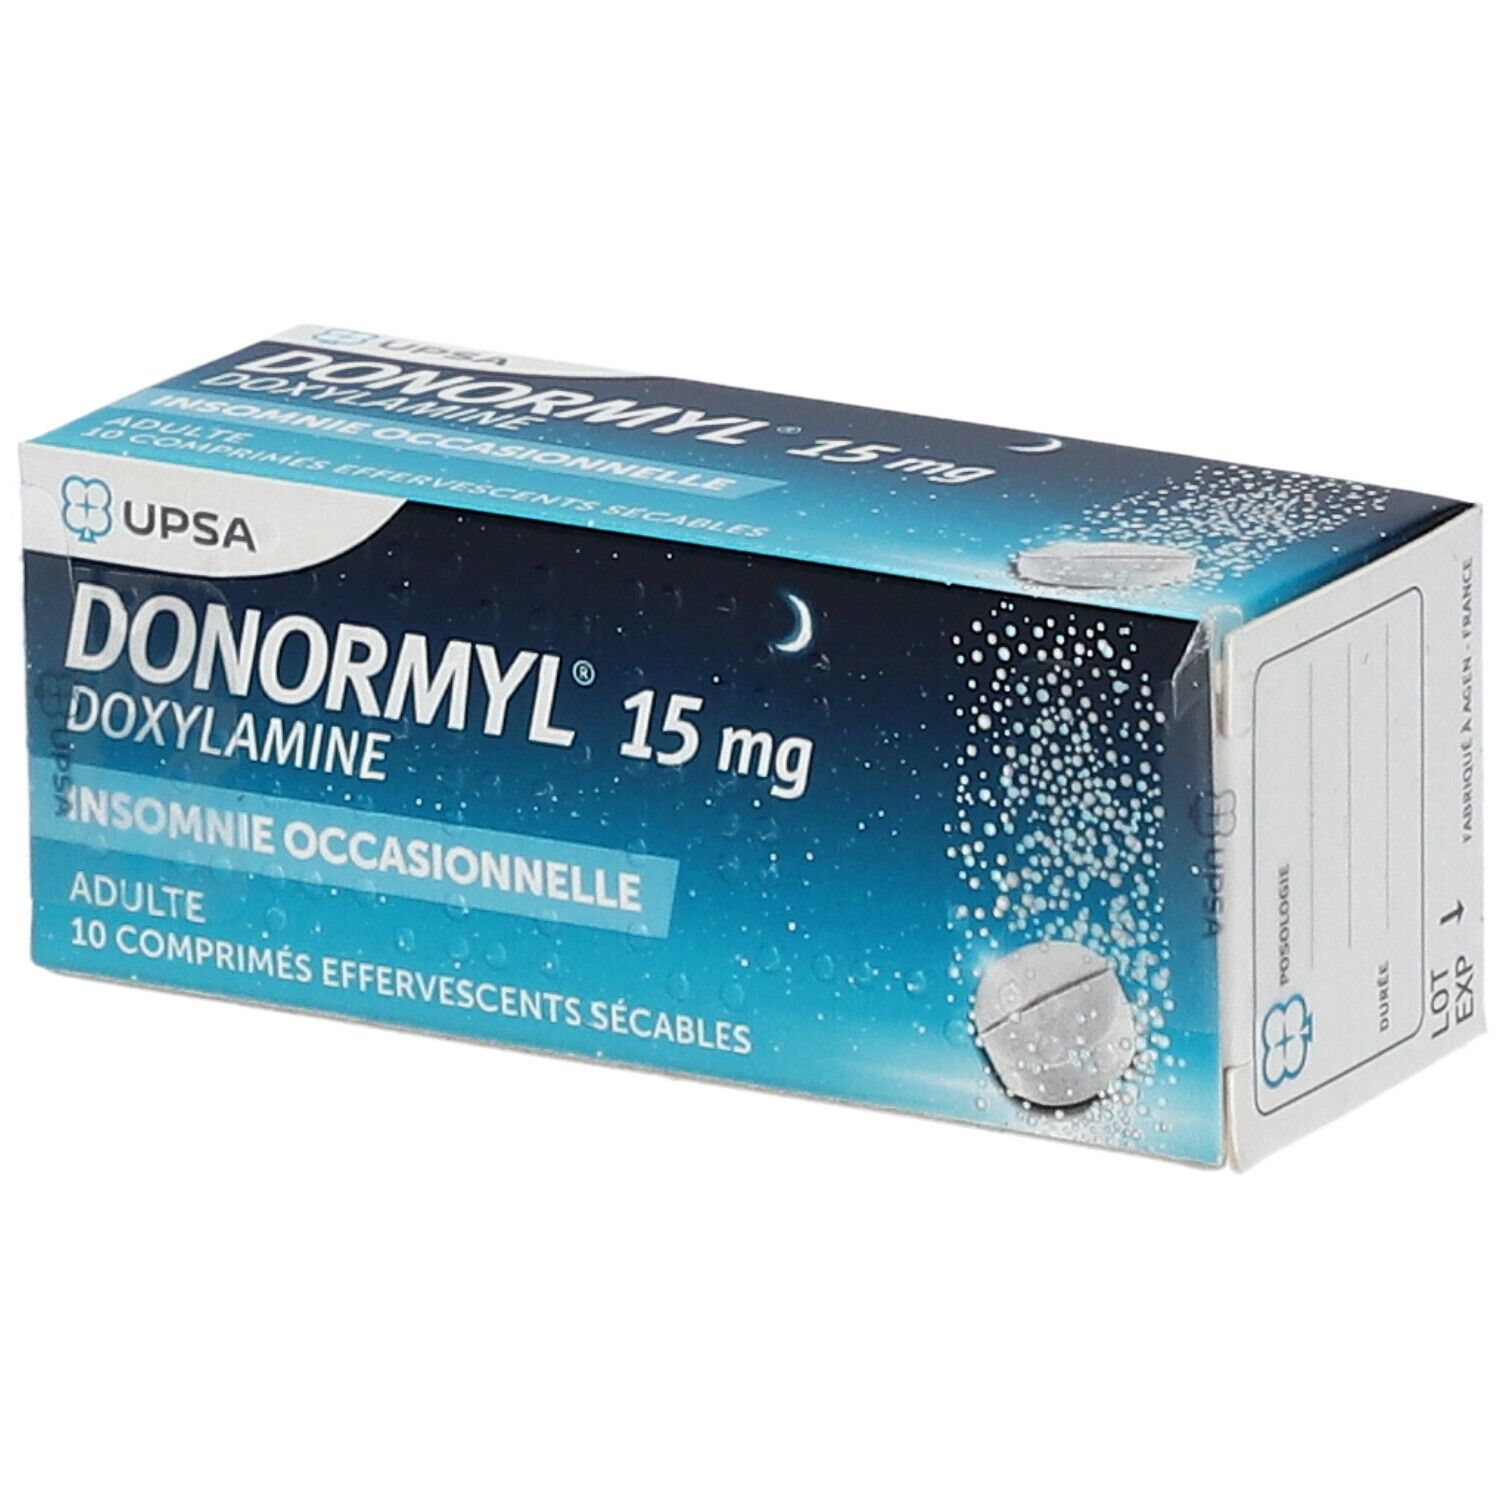 Donormyl 15 mg, comprimé effervescent sécable